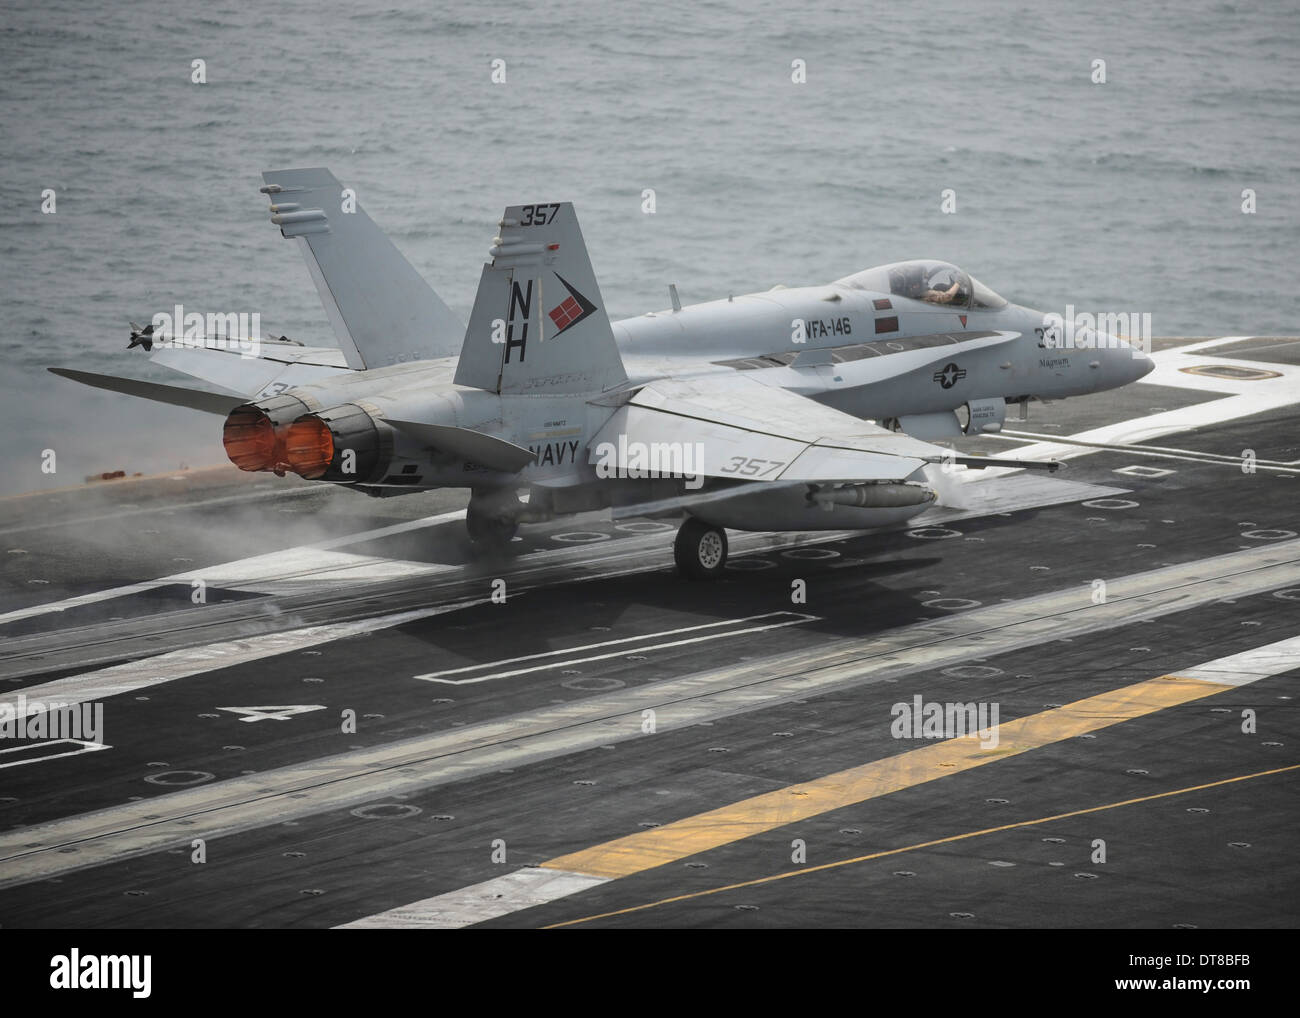 Agosto 15, 2013 - Un F/A-18 C Hornet lanzamientos desde el portaaviones USS Nimitz. Foto de stock